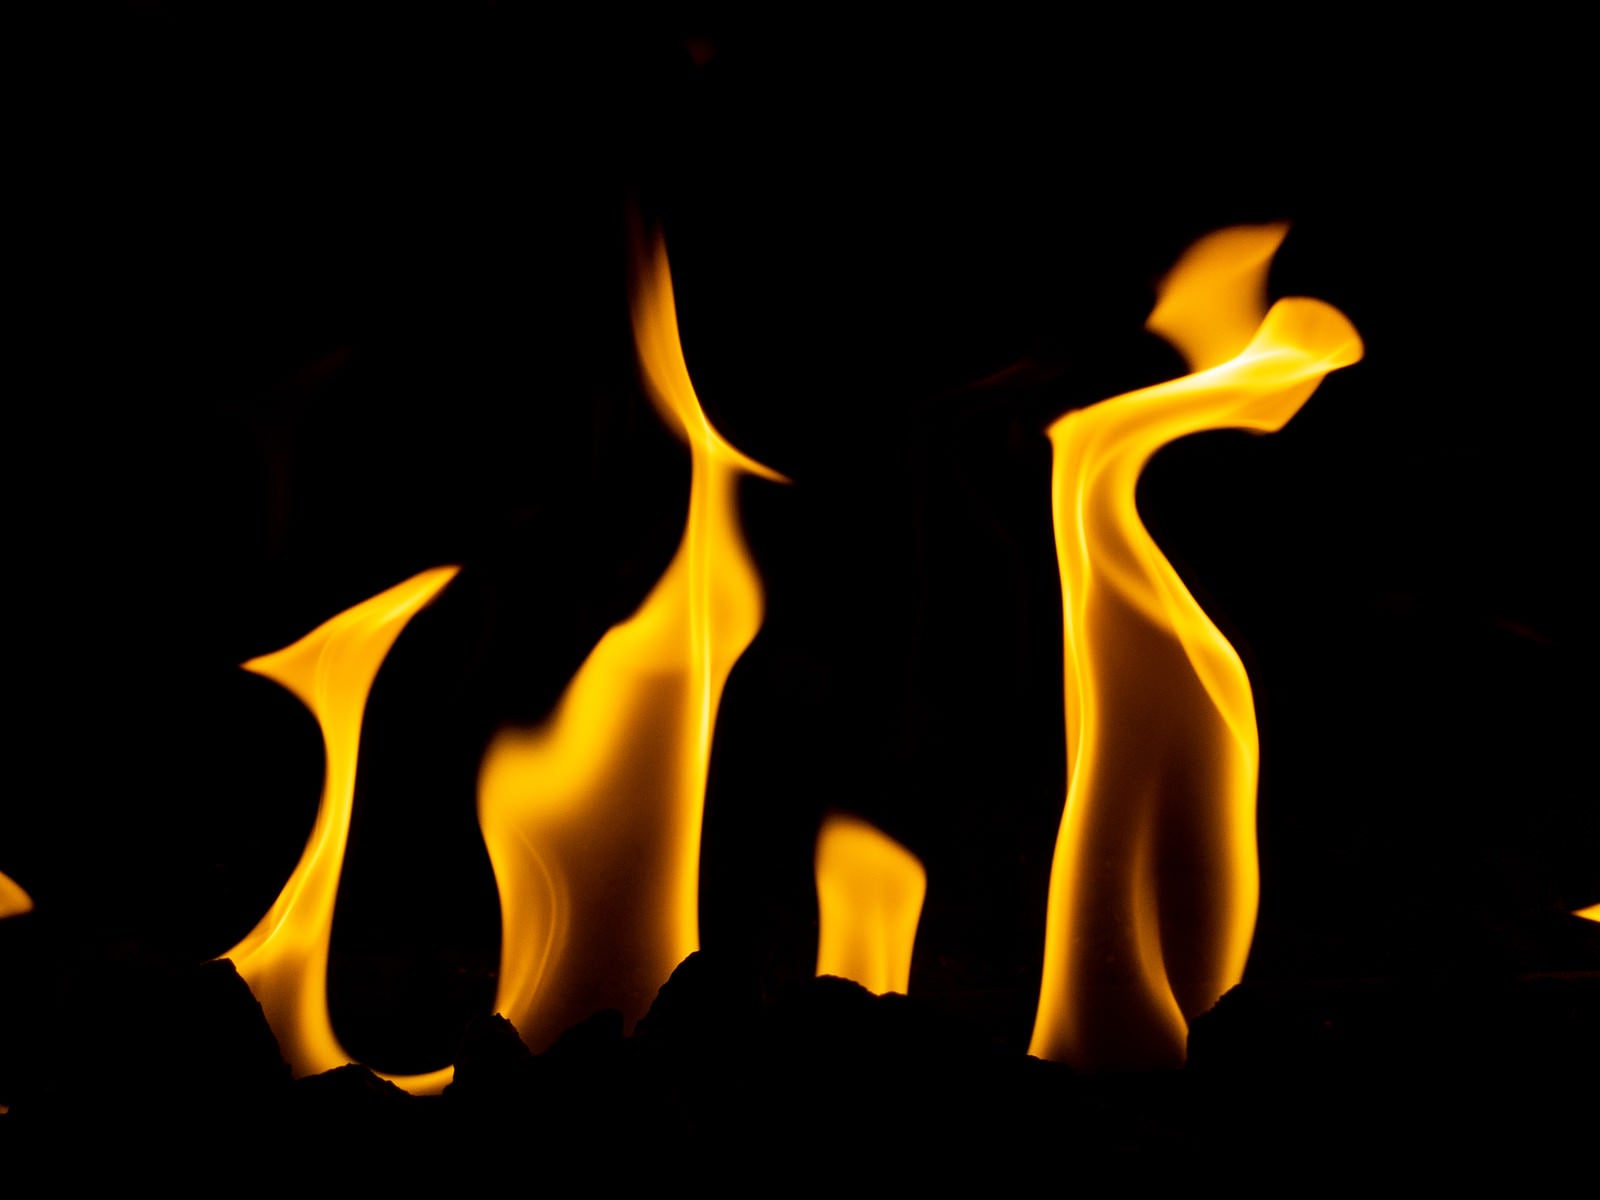 「火がメラメラ燃える様子」の写真